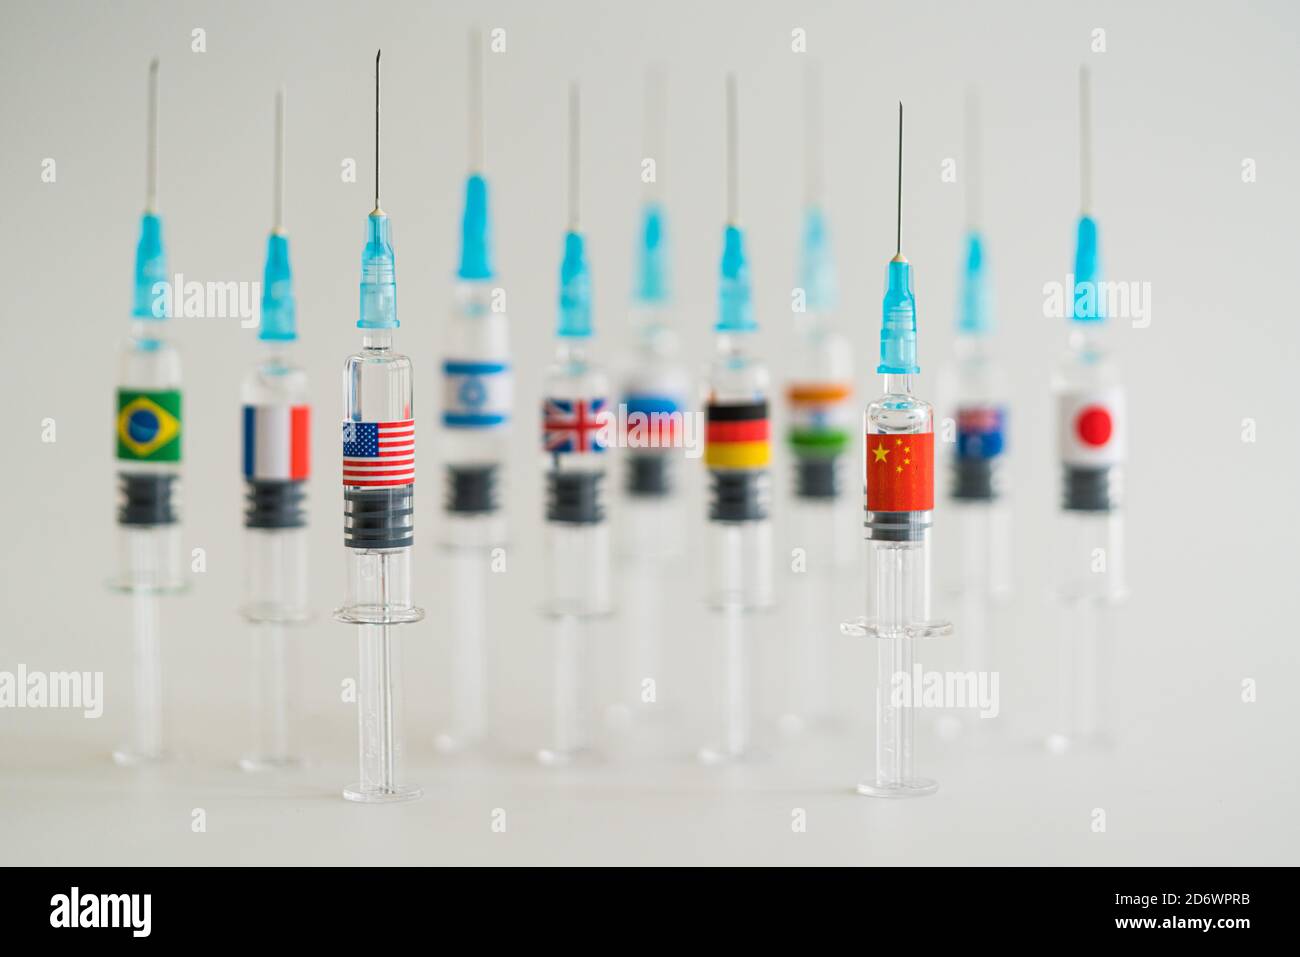 Image conceptuelle de la compétition entre Chaina et les Etats-Unis sur la production et la distribution d'un vaccin contre Covid 19. Banque D'Images